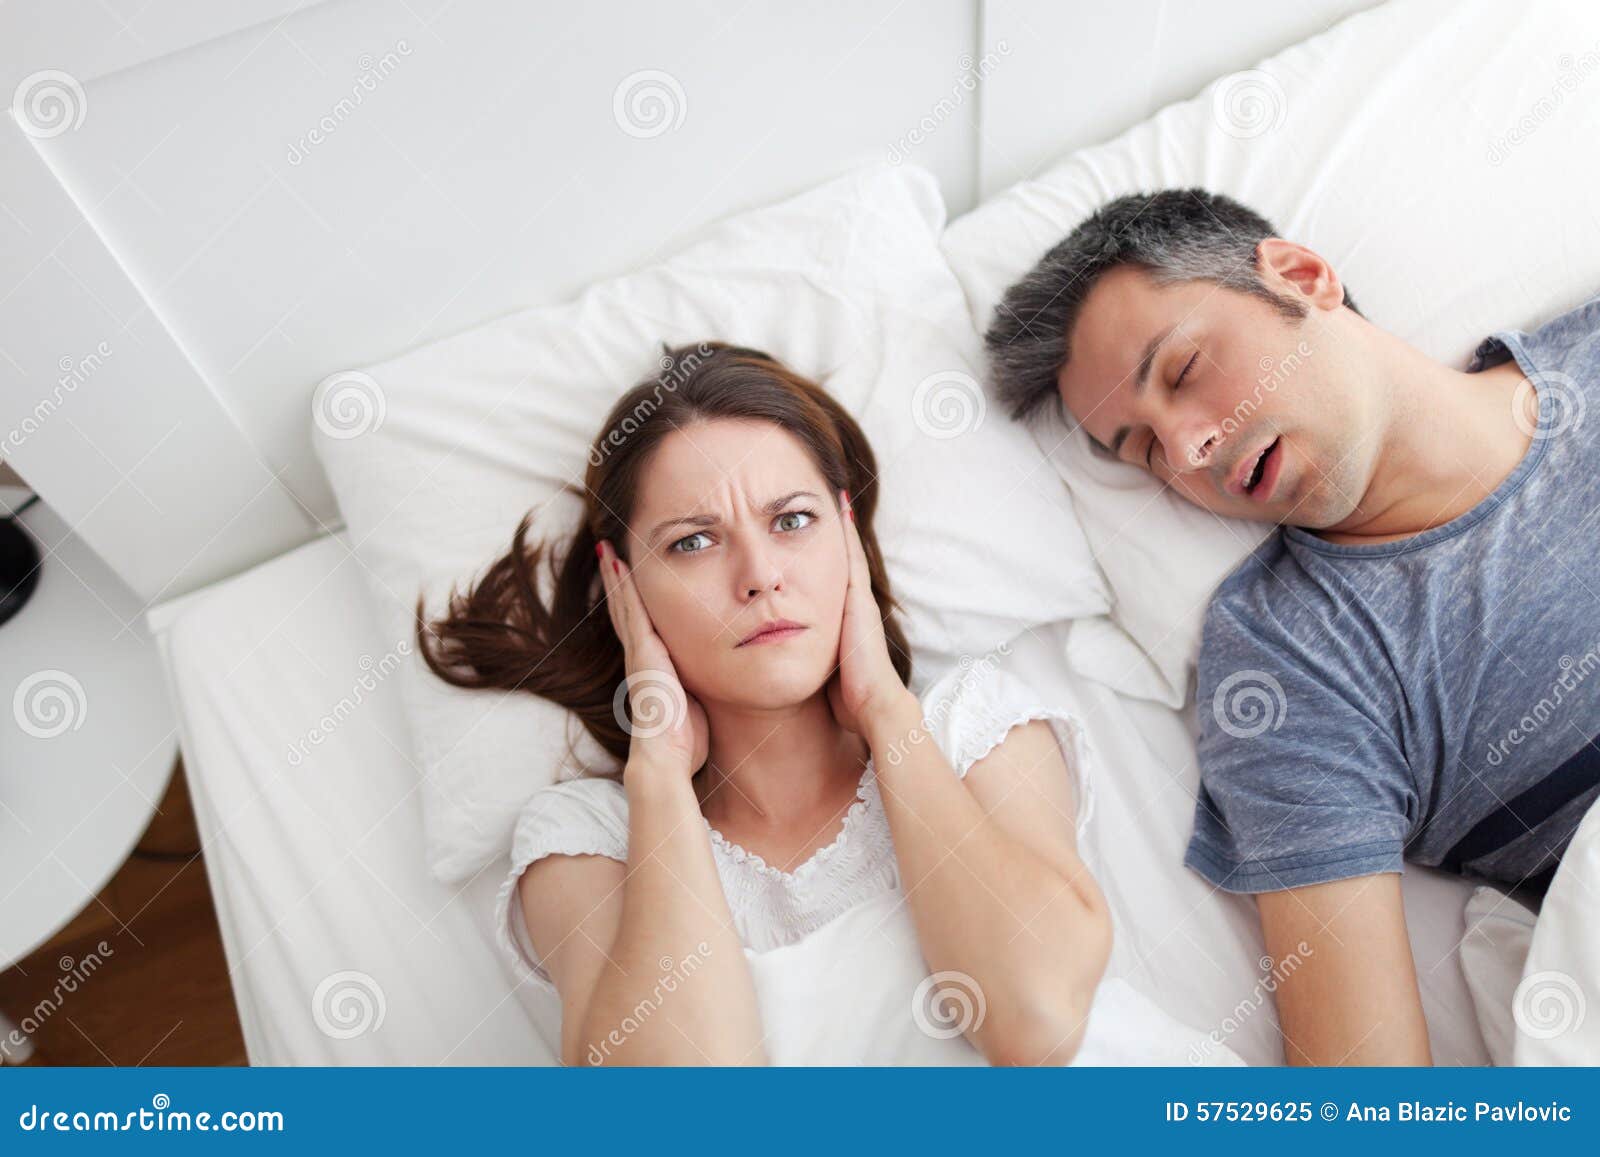 snoring husband